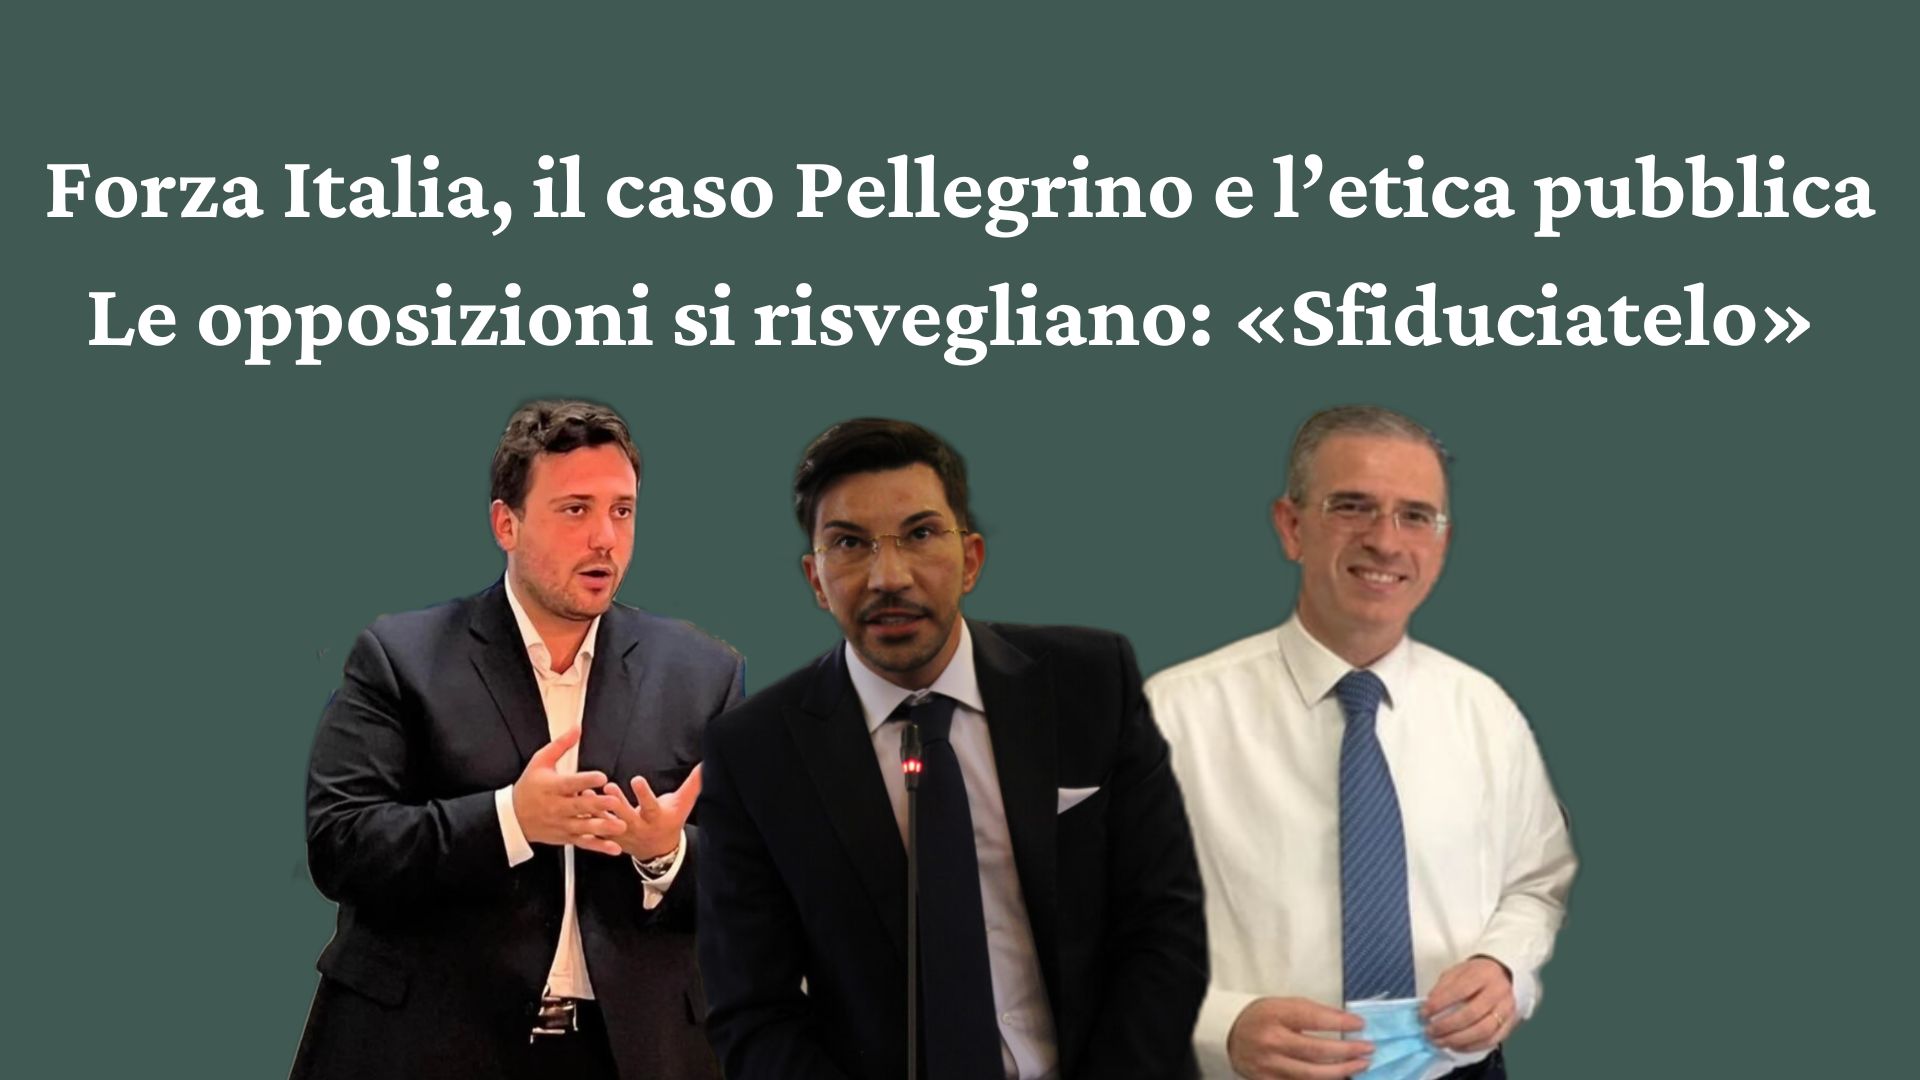 Caso Pellegrino, il sindaco temporeggia ma si risvegliano le opposizioni<br>«Se il consigliere non vuole dimettersi, lo deve sfiduciare Forza Italia»